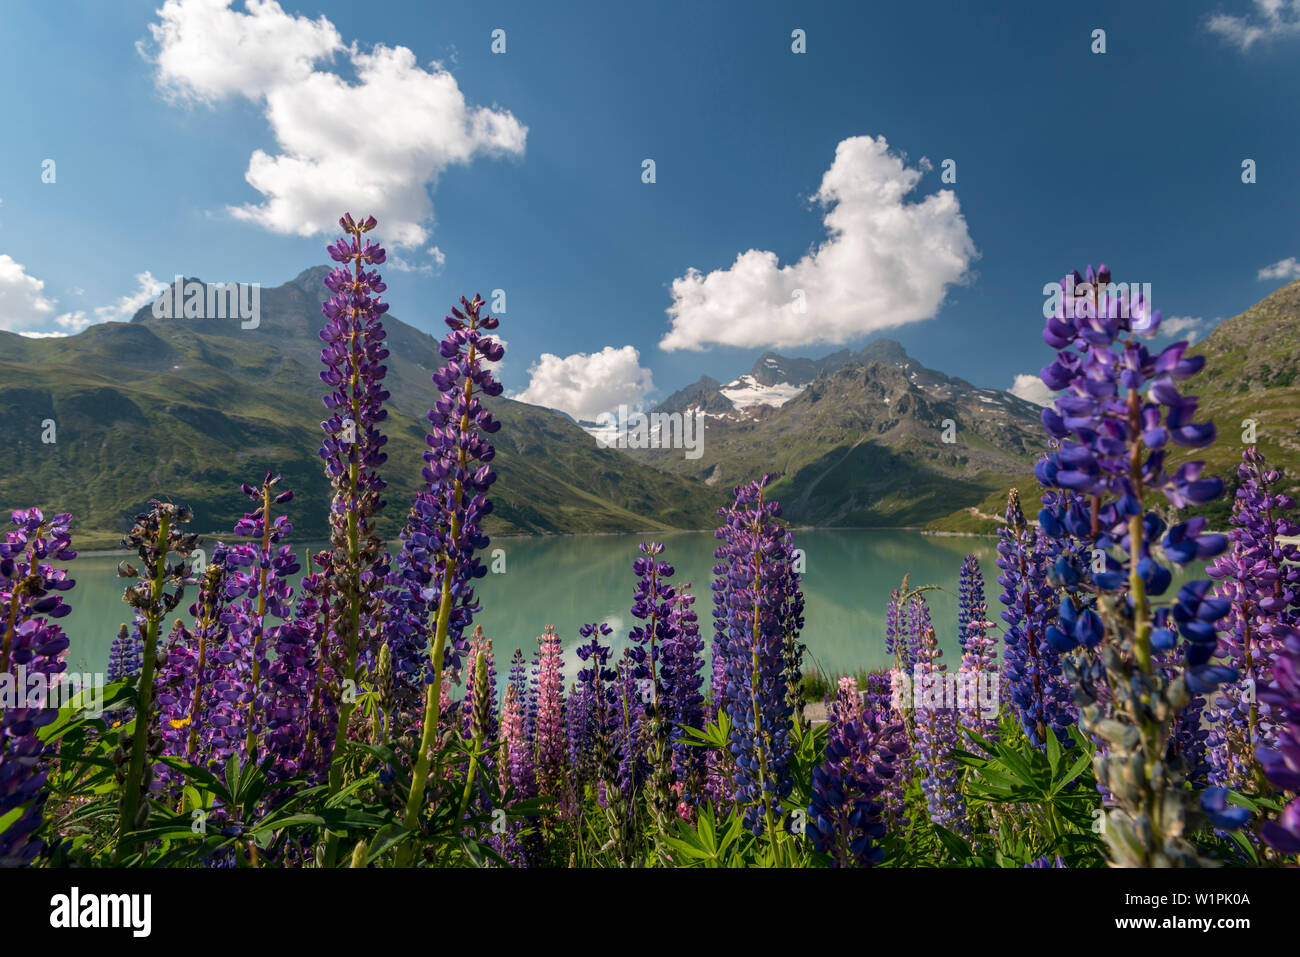 Lake Silvrettasee, lupines, Mt. Hohes Rad, Mt. Schattenspitze, Glacier Schattenspitzgletscher, Bludenz, Vorarlberg, Austria, Europe Stock Photo